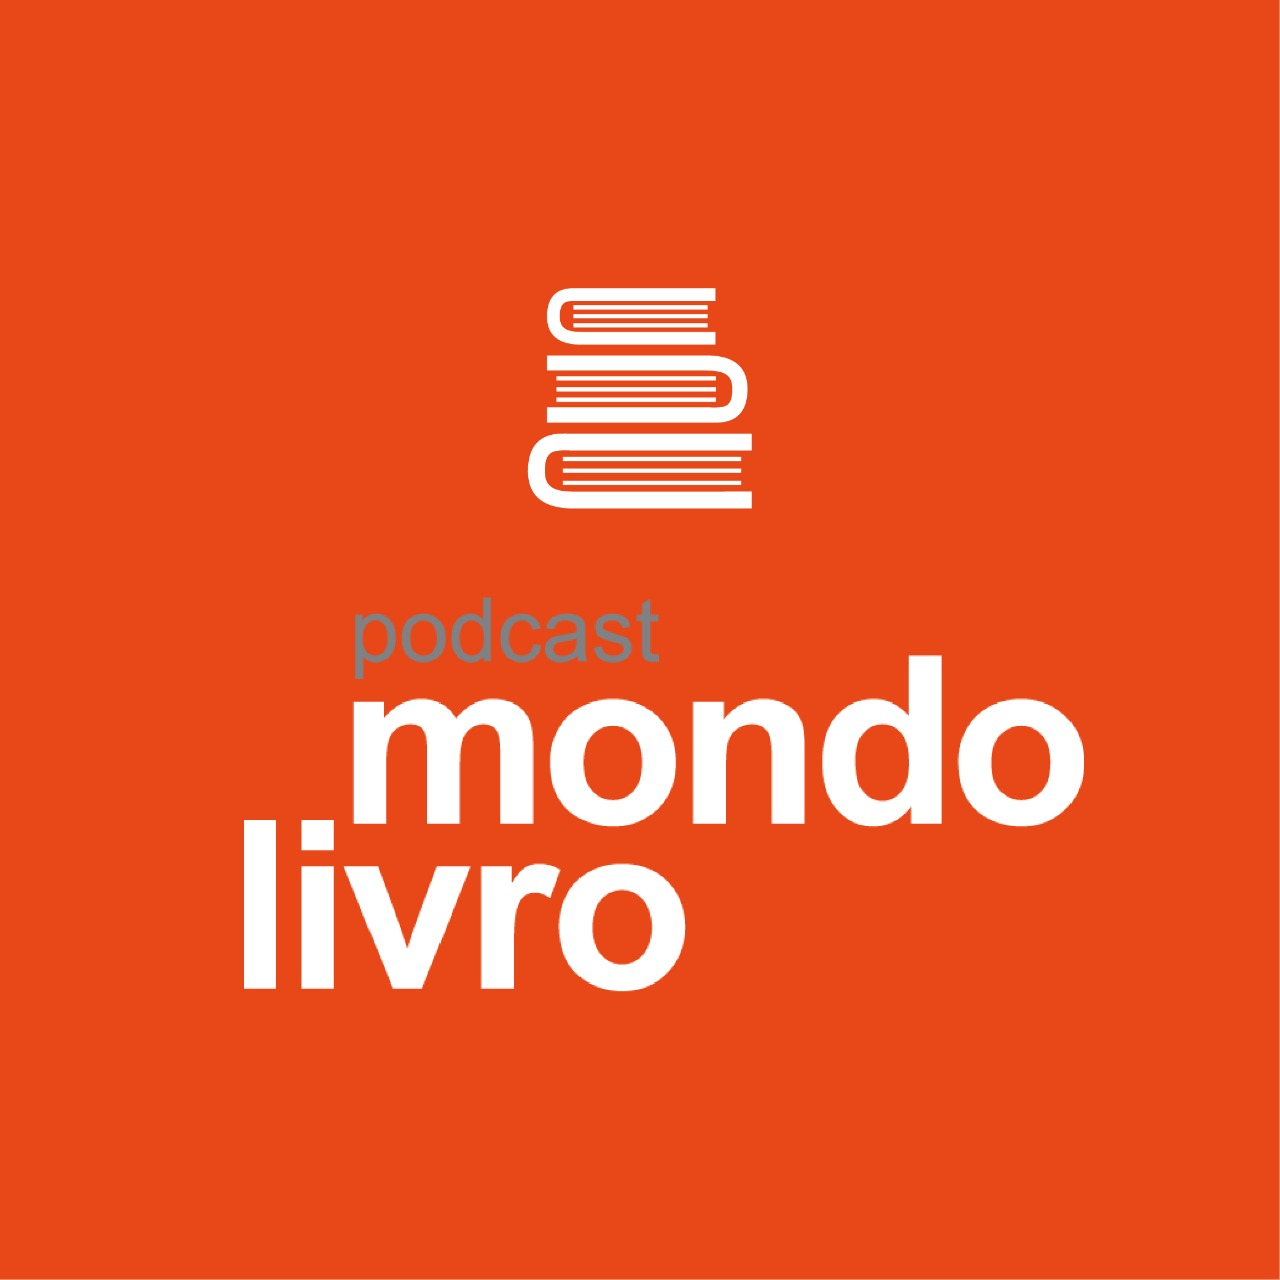 Mondolivro Podcast - Ricardo Aleixo no Mondolivro Podcast